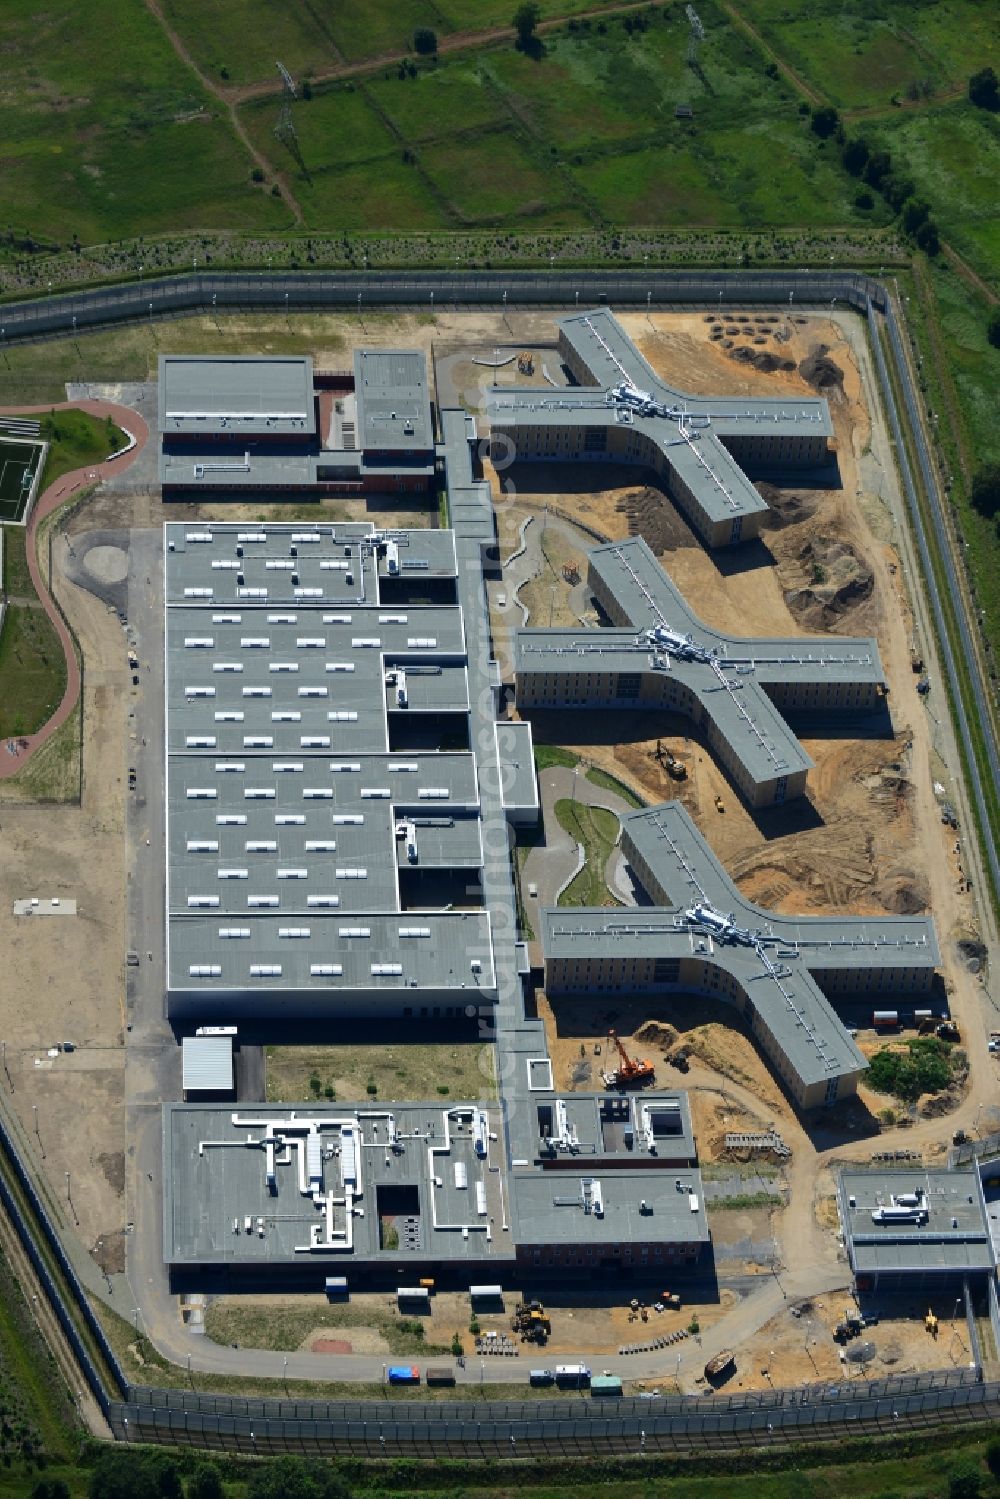 Aerial image Großbeeren - Construction site of the new penal institution Heidering Grossbeeren